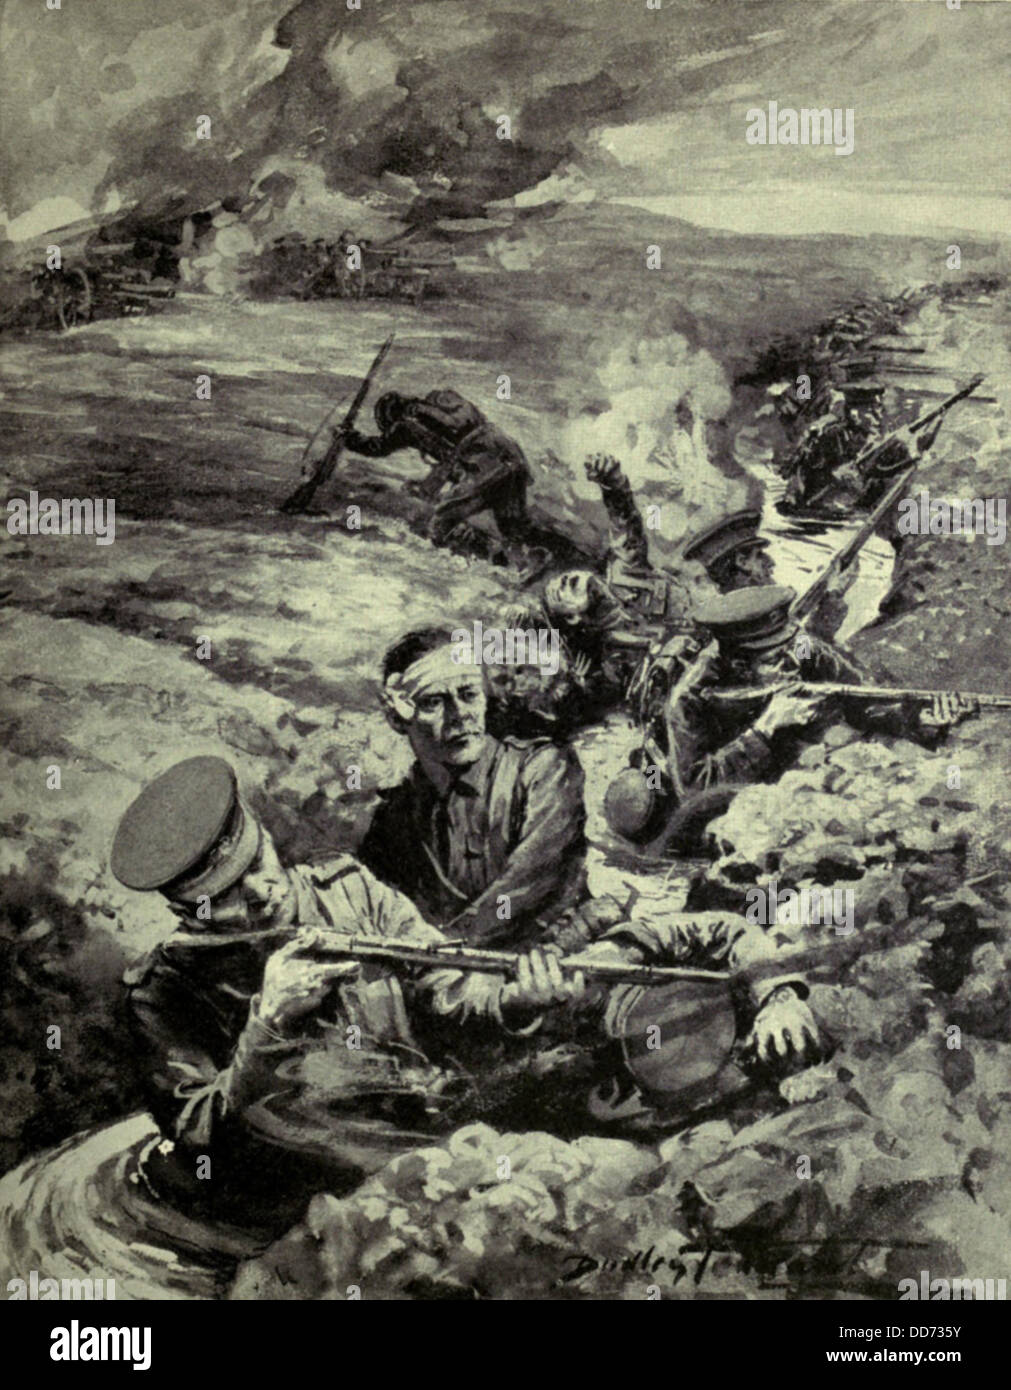 La centenaria historia del aguardiente de las trincheras de la Primera  Guerra Mundial - BBC News Mundo